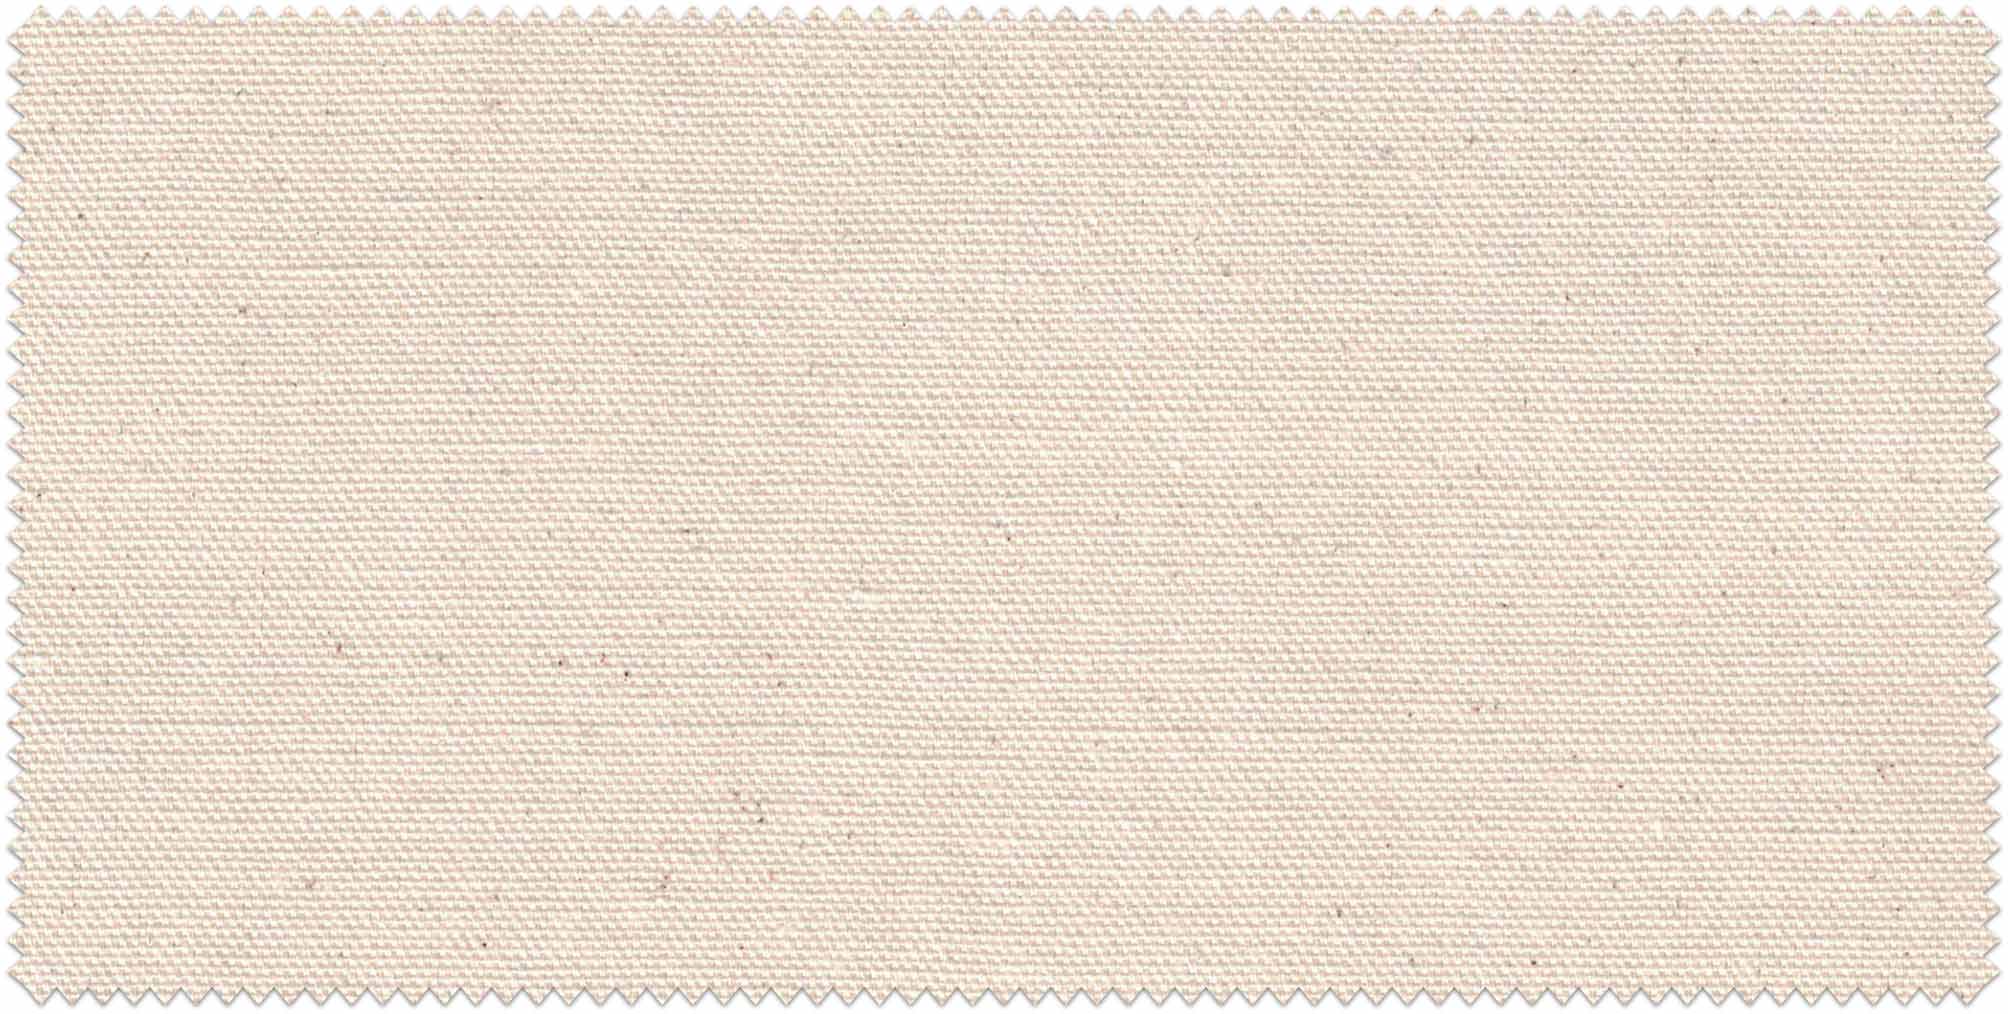 Cream Canvas Fabric - 7 Oz, 60 W, Single Fill Duck